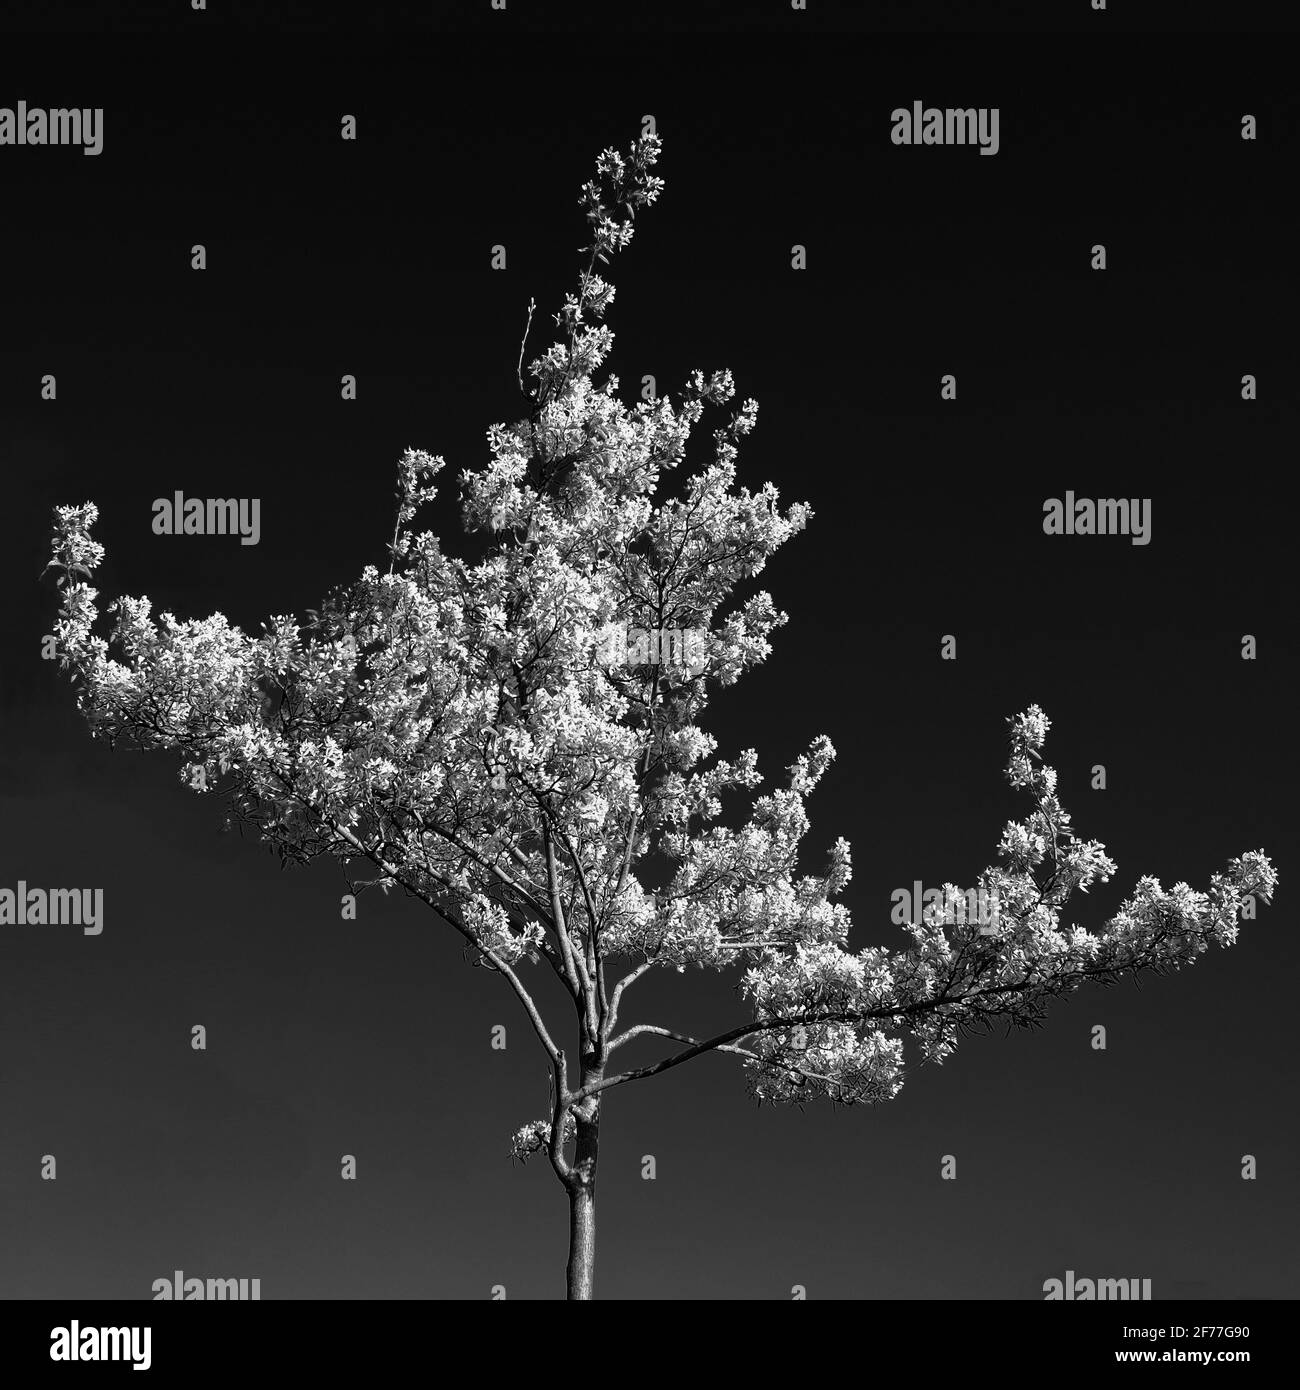 Aprile 2021 - ciliegia primaverile, Cheddar, Somerset, Regno Unito. Foto Stock